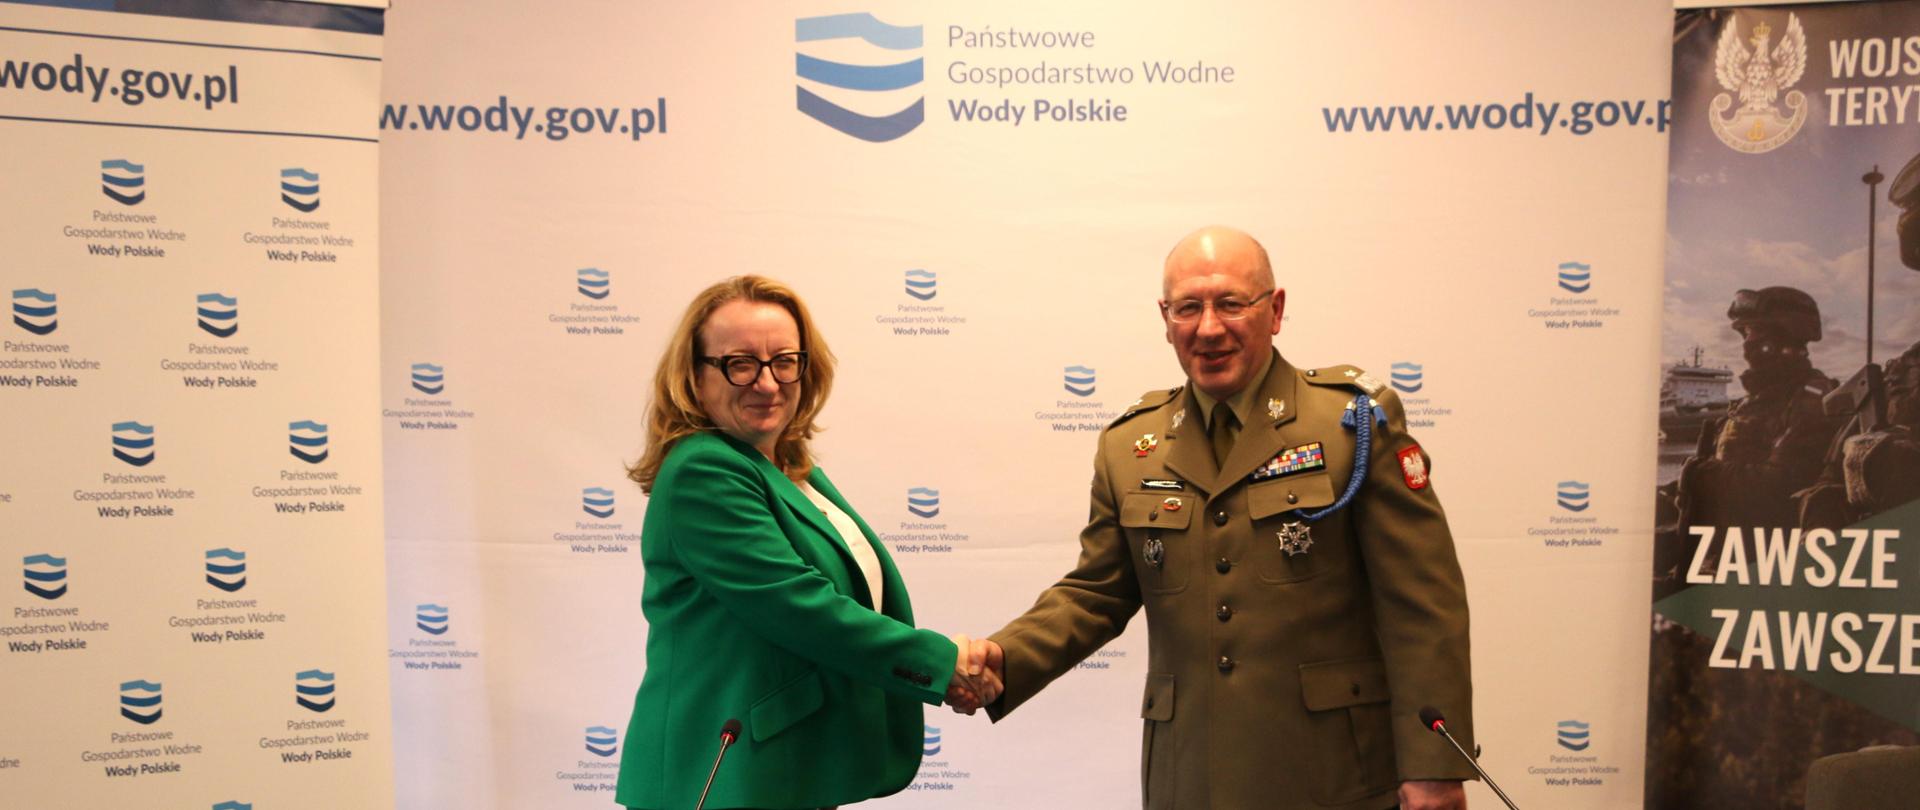 Prezes Wód Polskich Joanna Kopczyńska i generał Krzysztof Stańczyk zawarli porozumienie w sprawie współpracy Wód Polskich i Wojsk Obrony Terytorialnej